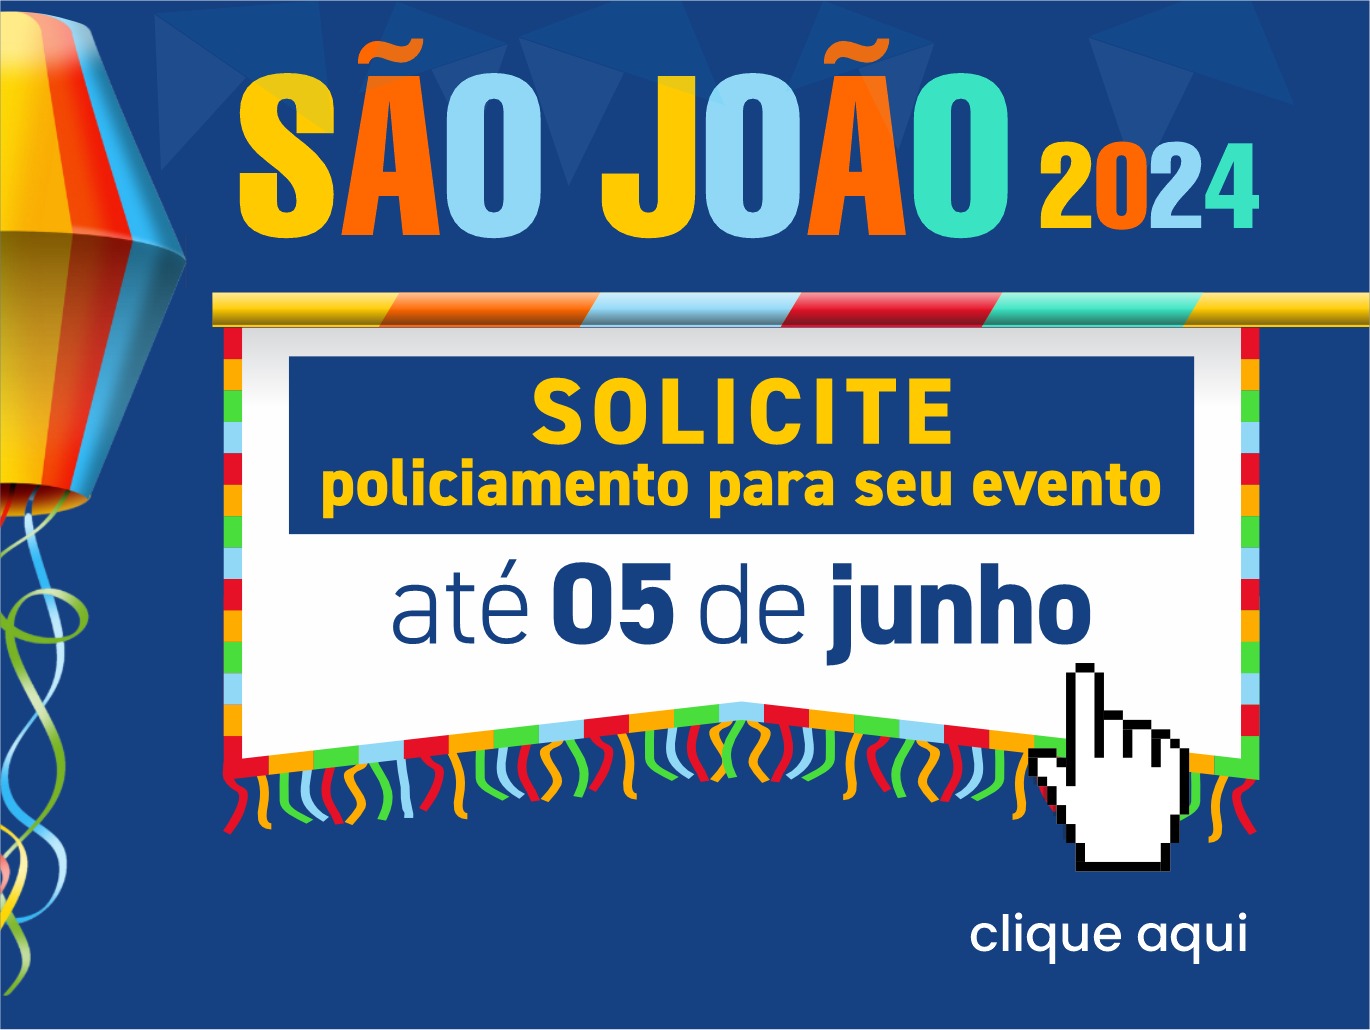 SÃO JOÃO 2024: REFORÇO NO POLICIAMENTO JÁ PODE SER SOLICITADO